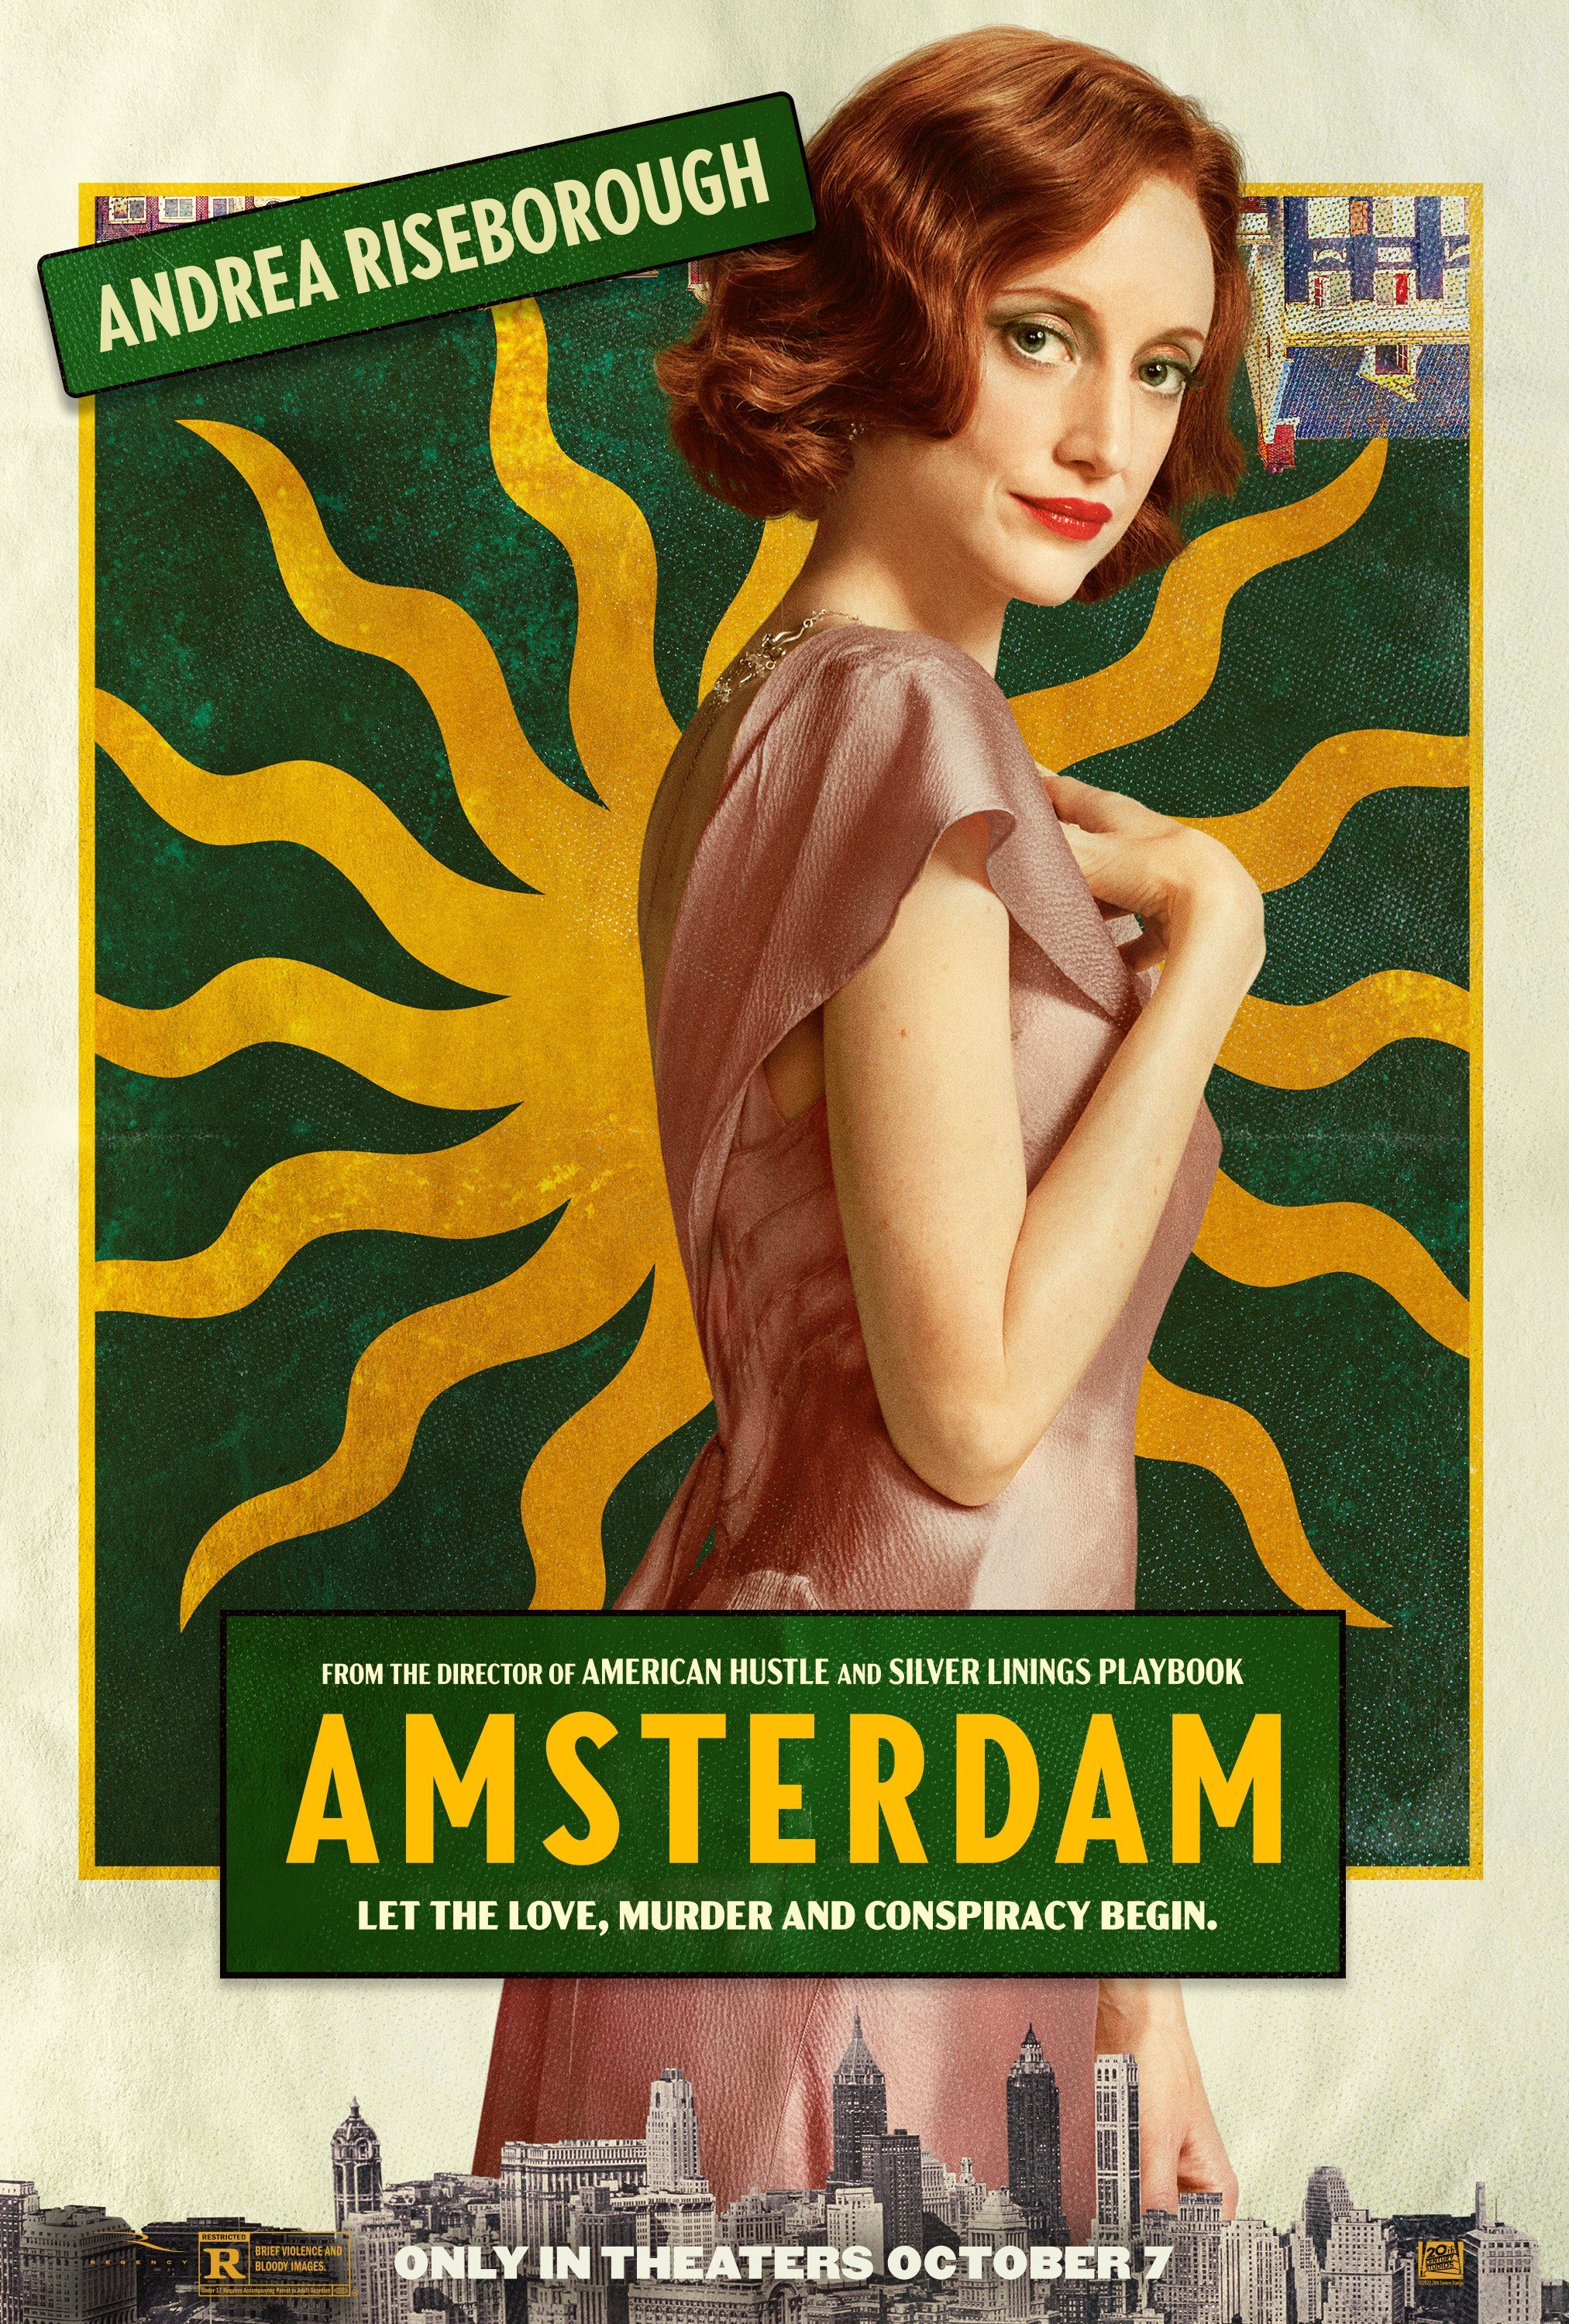 Andrea Riseborough in Amsterdam poster